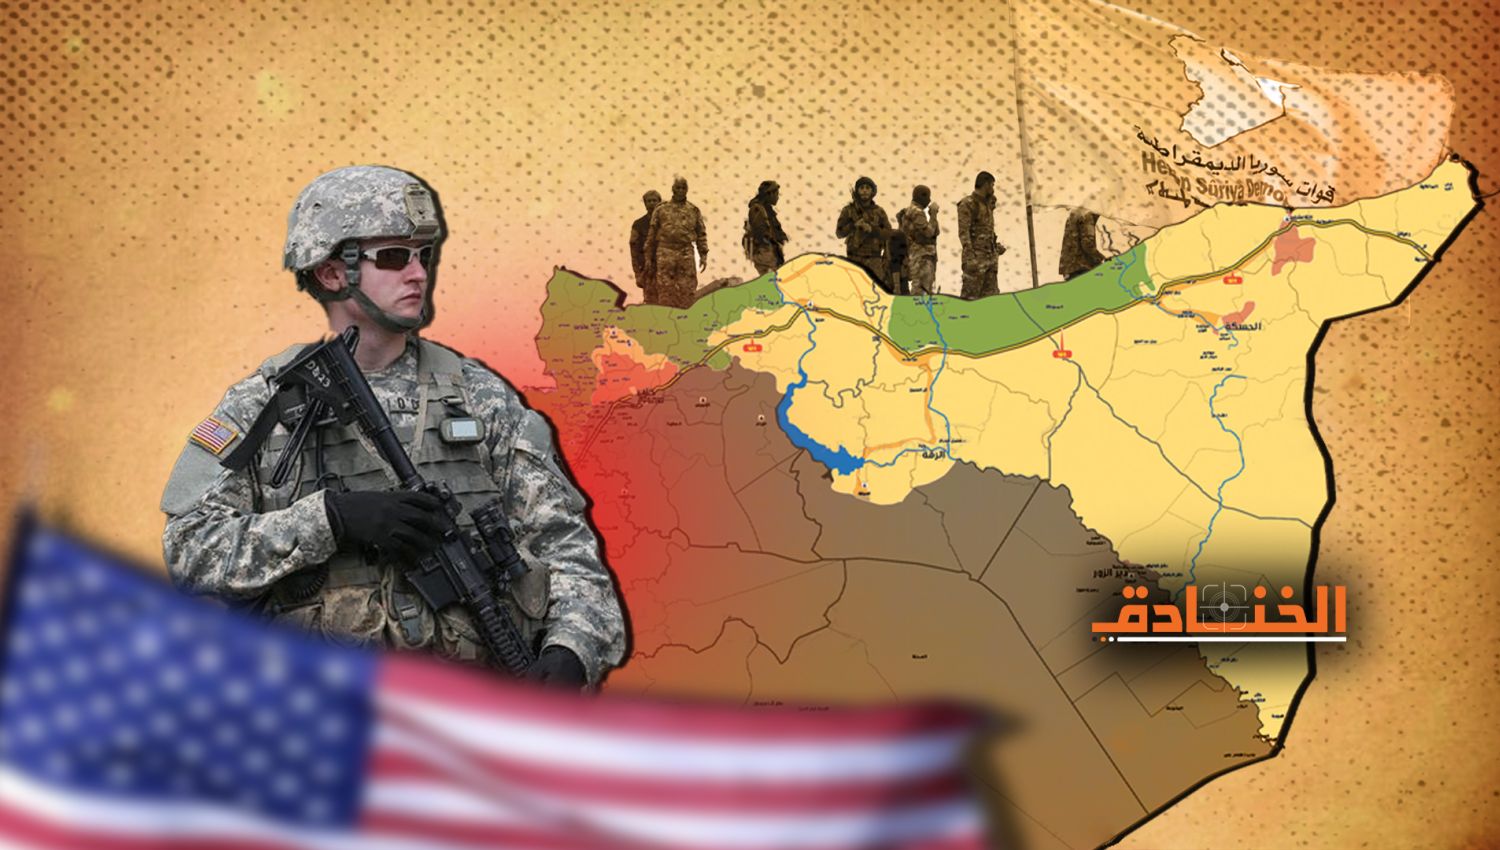 تحركات أمريكية مريبة في سوريا بالتزامن مع العملية الروسية في أوكرانيا